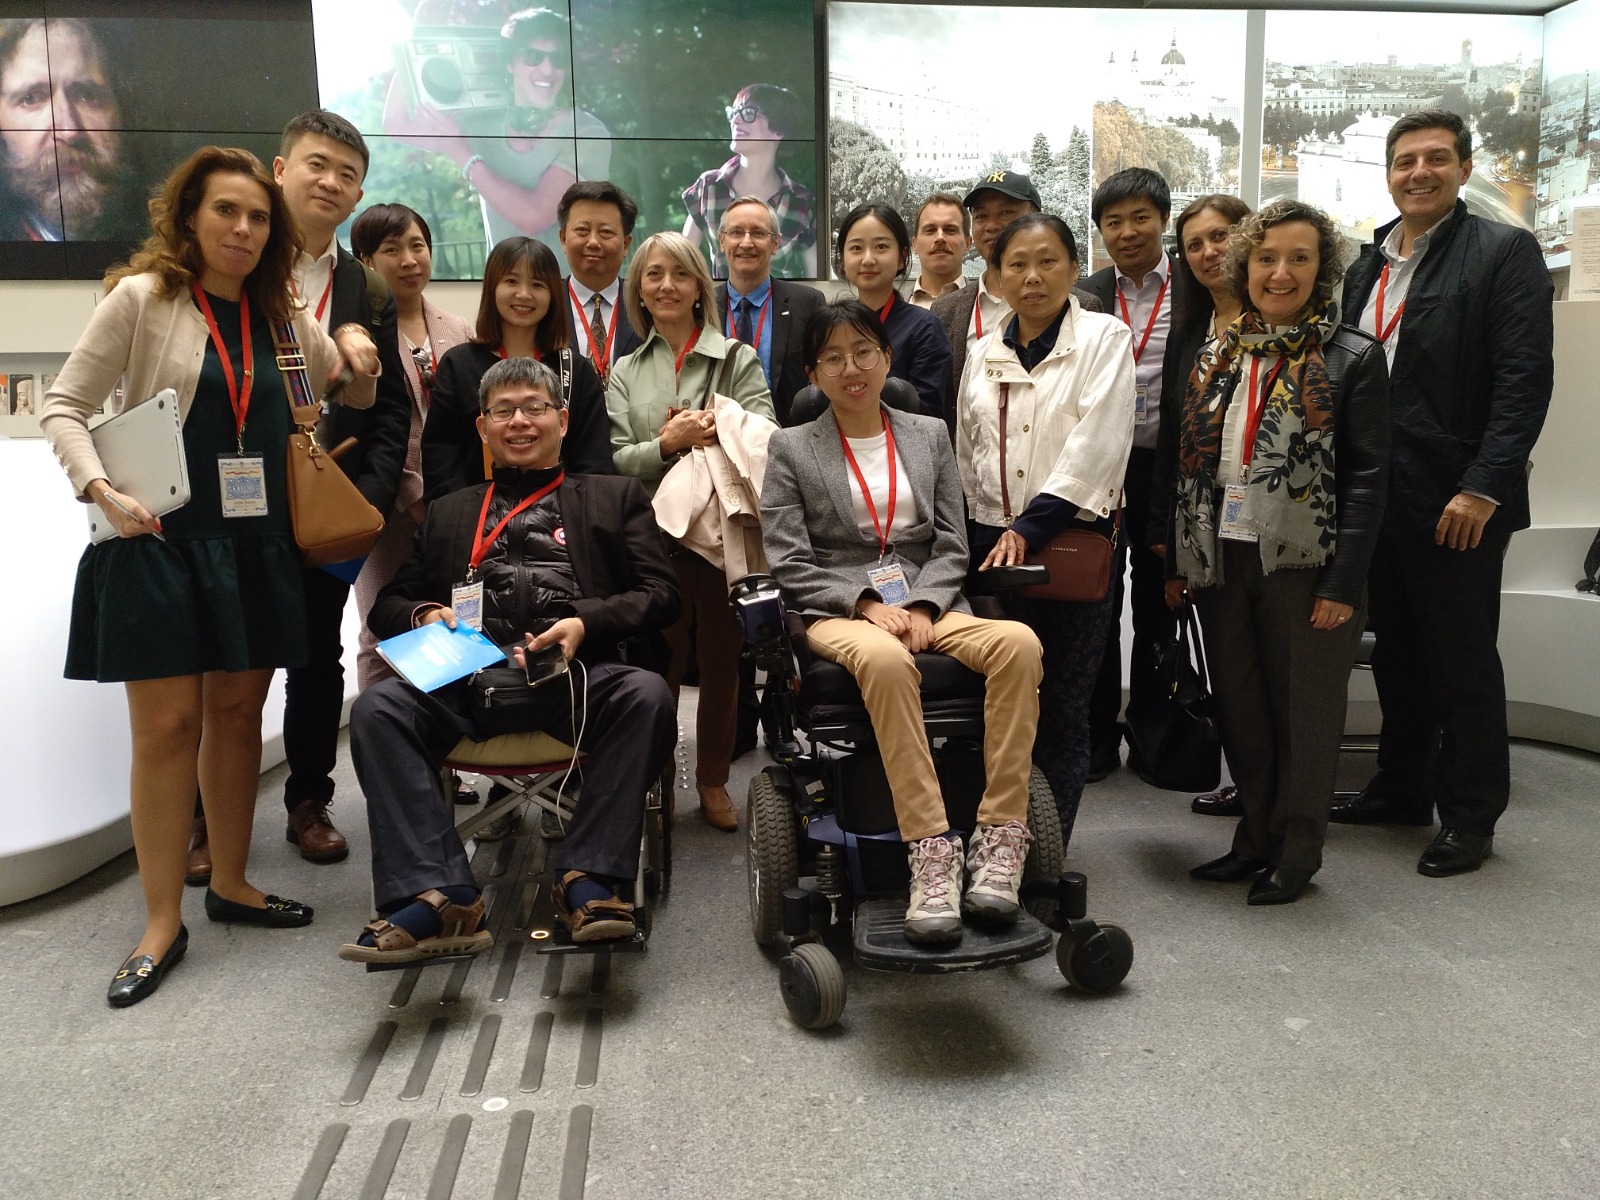 Representantes de Accessible Madrid posando con personas de la administración pública china que visitan Madrid para familiarizarse con los viajes especializados en accesibilidad